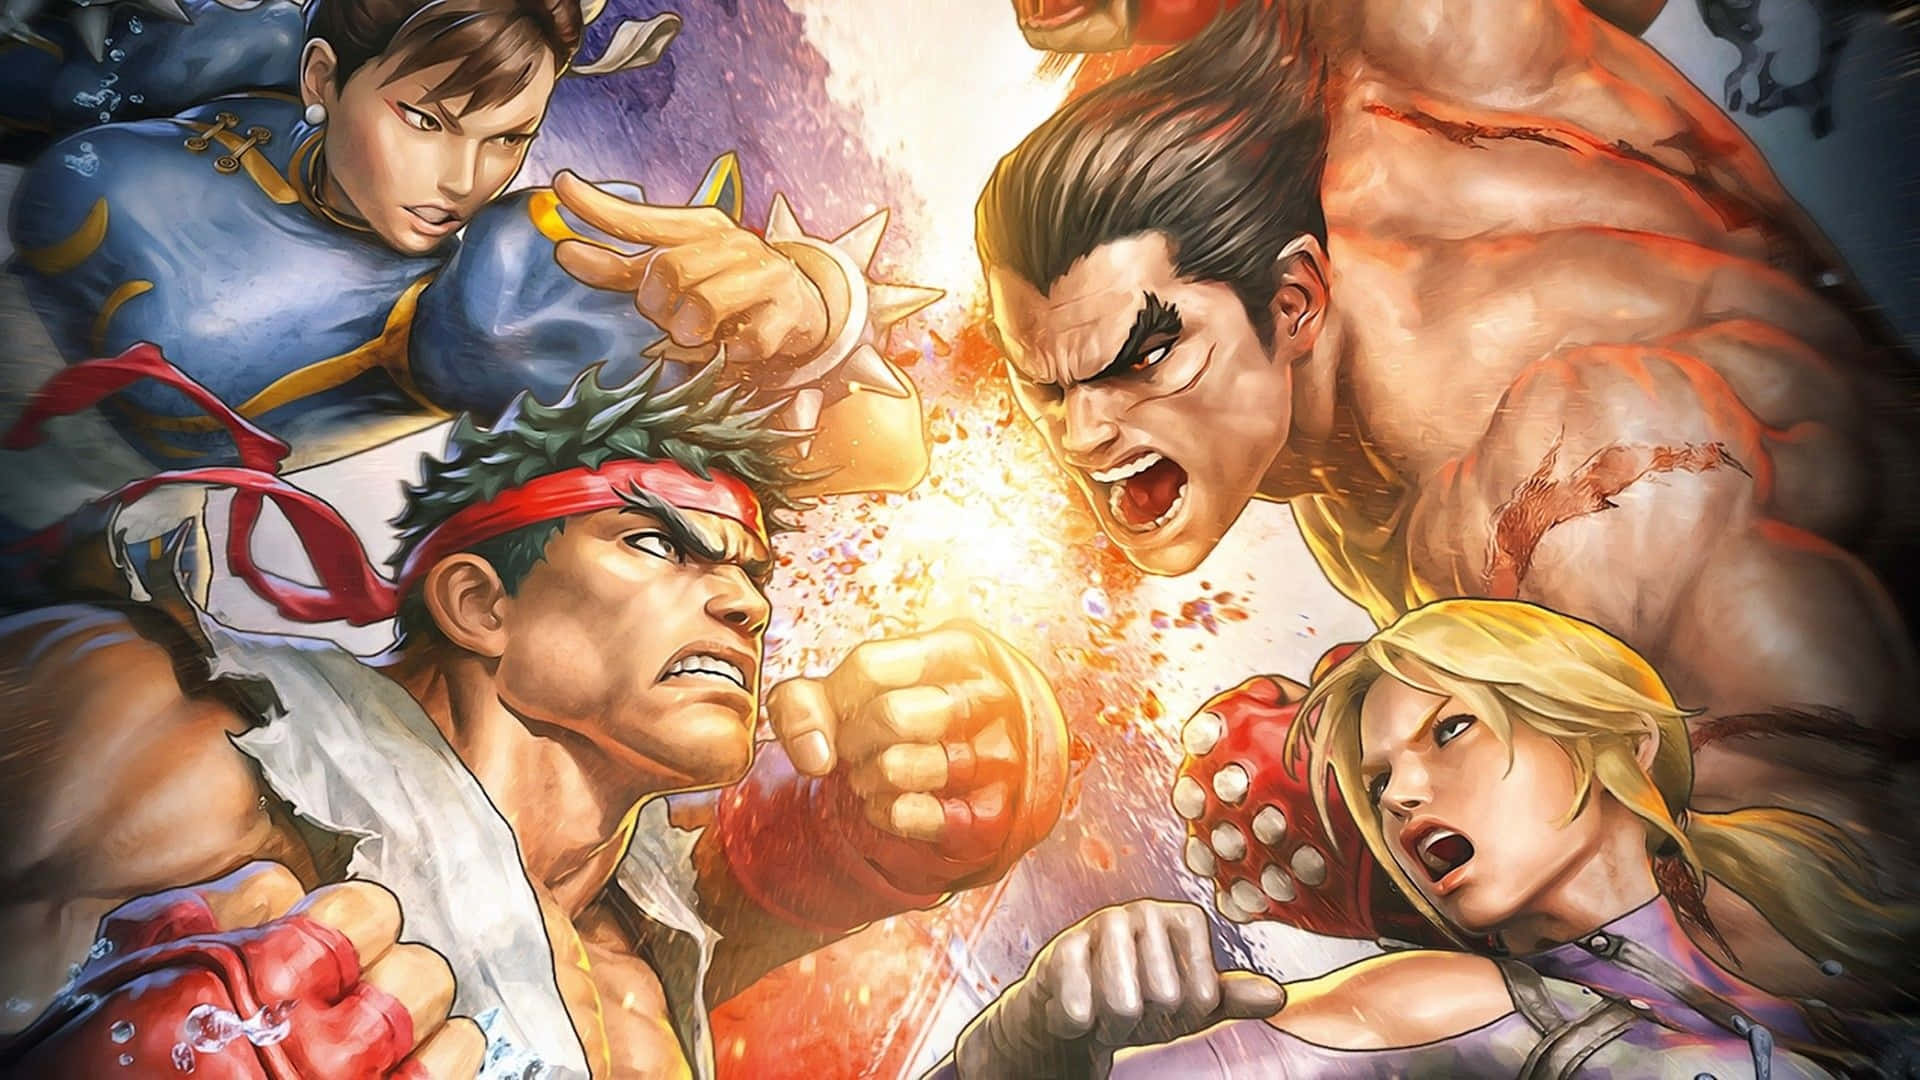 Einzusammenstoß Von Fäusten - Street Fighter 4k Wallpaper